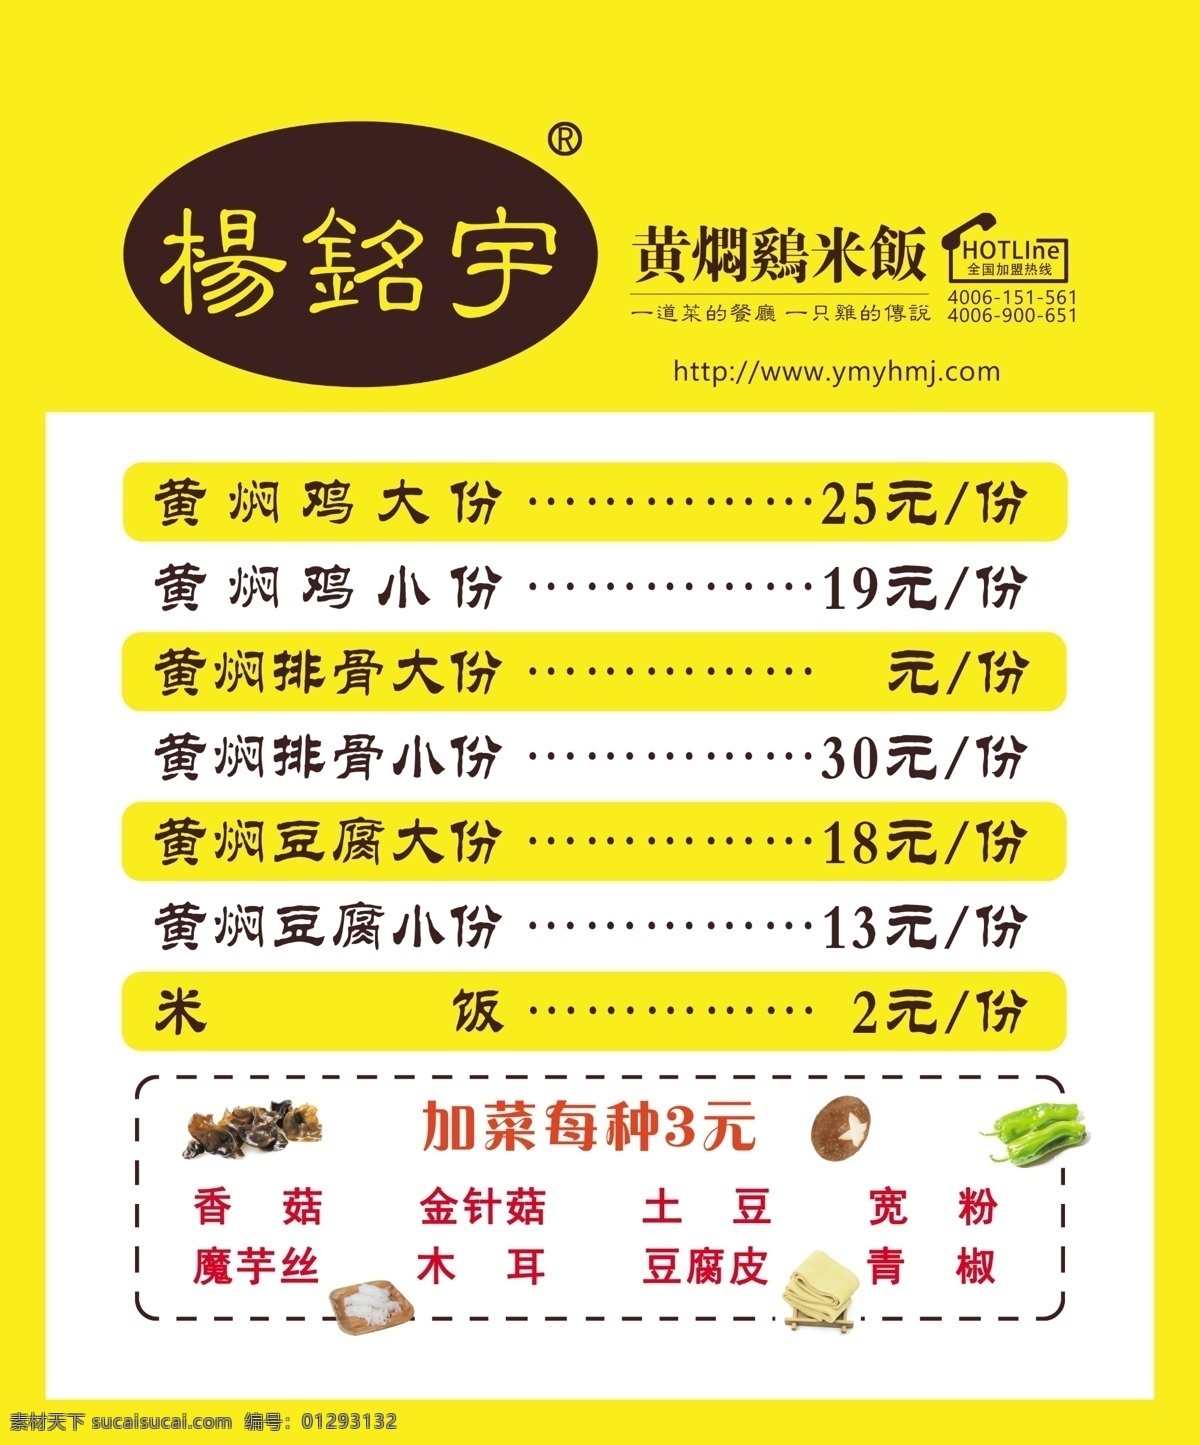 黄焖鸡米饭 黄焖鸡 米饭 灯片 广告 分层 价格单